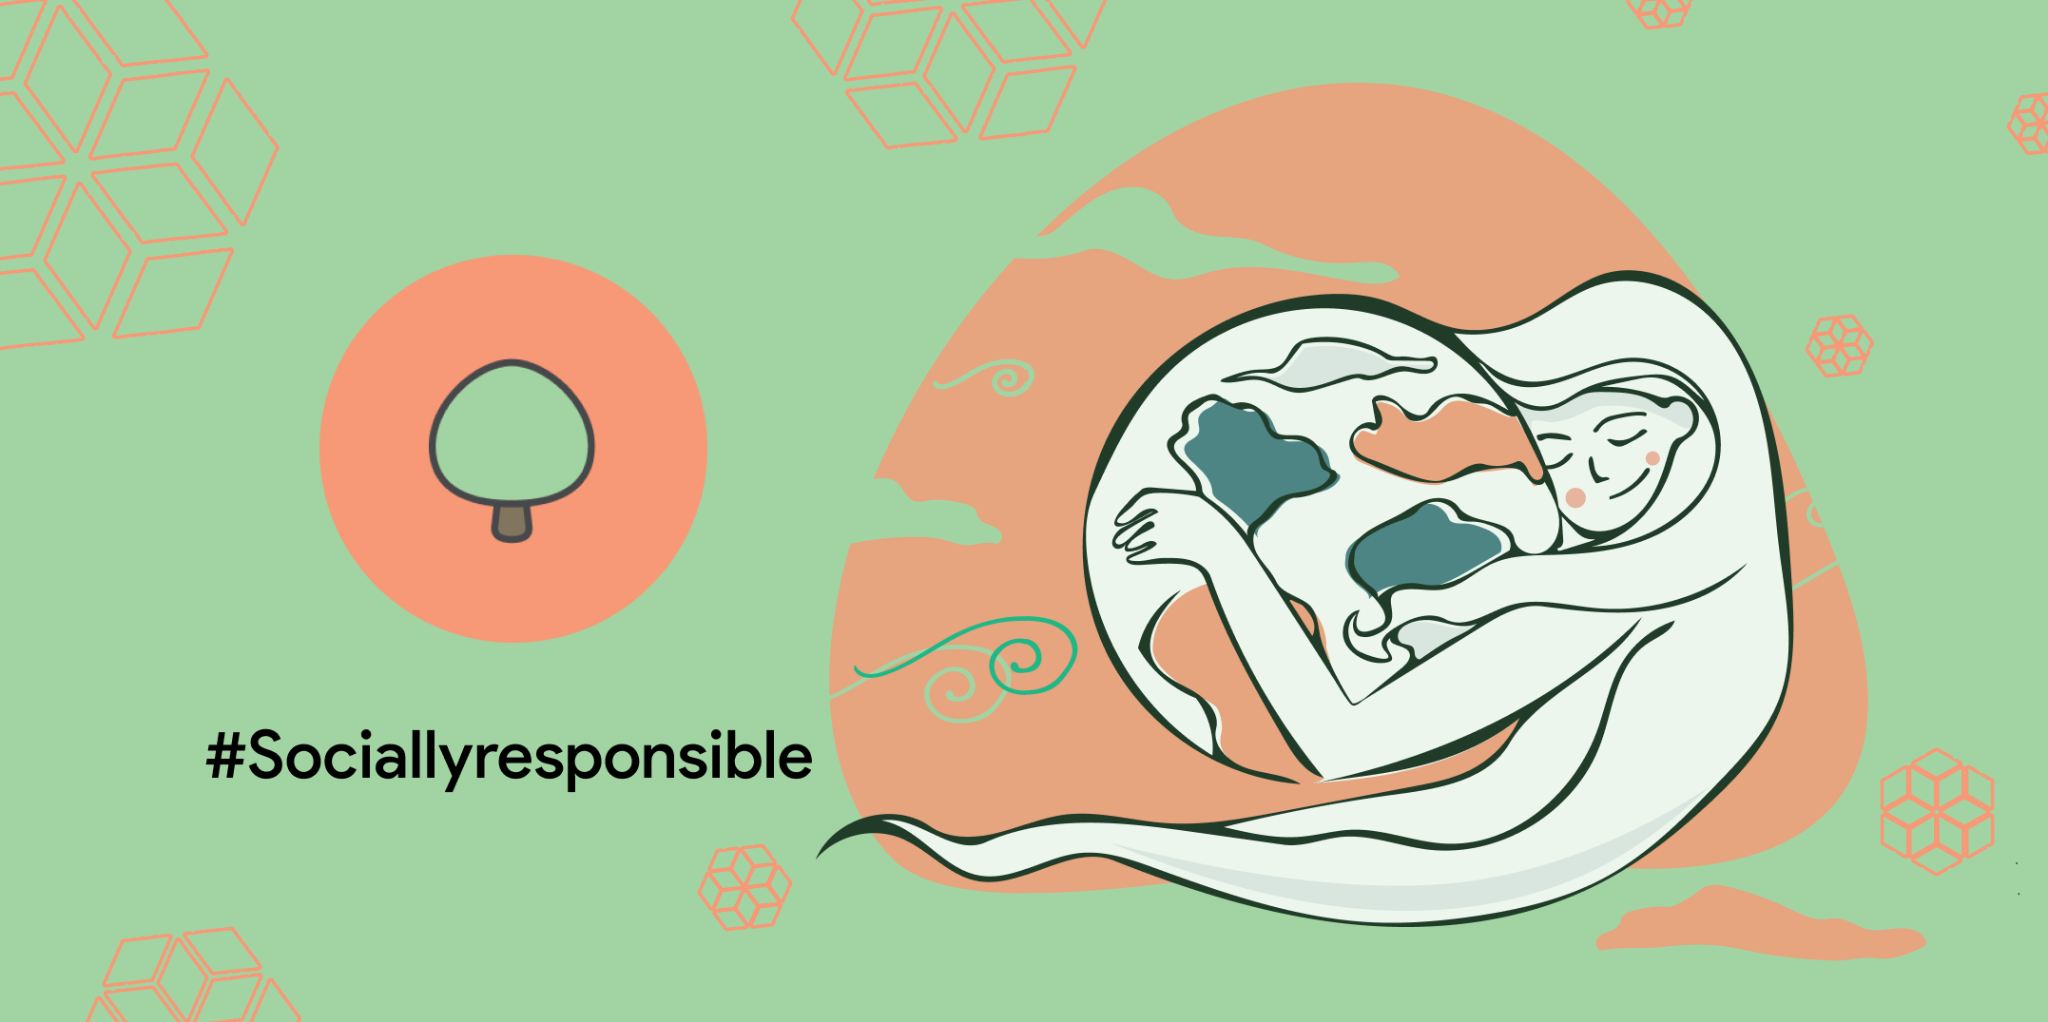 Socially responsible logo